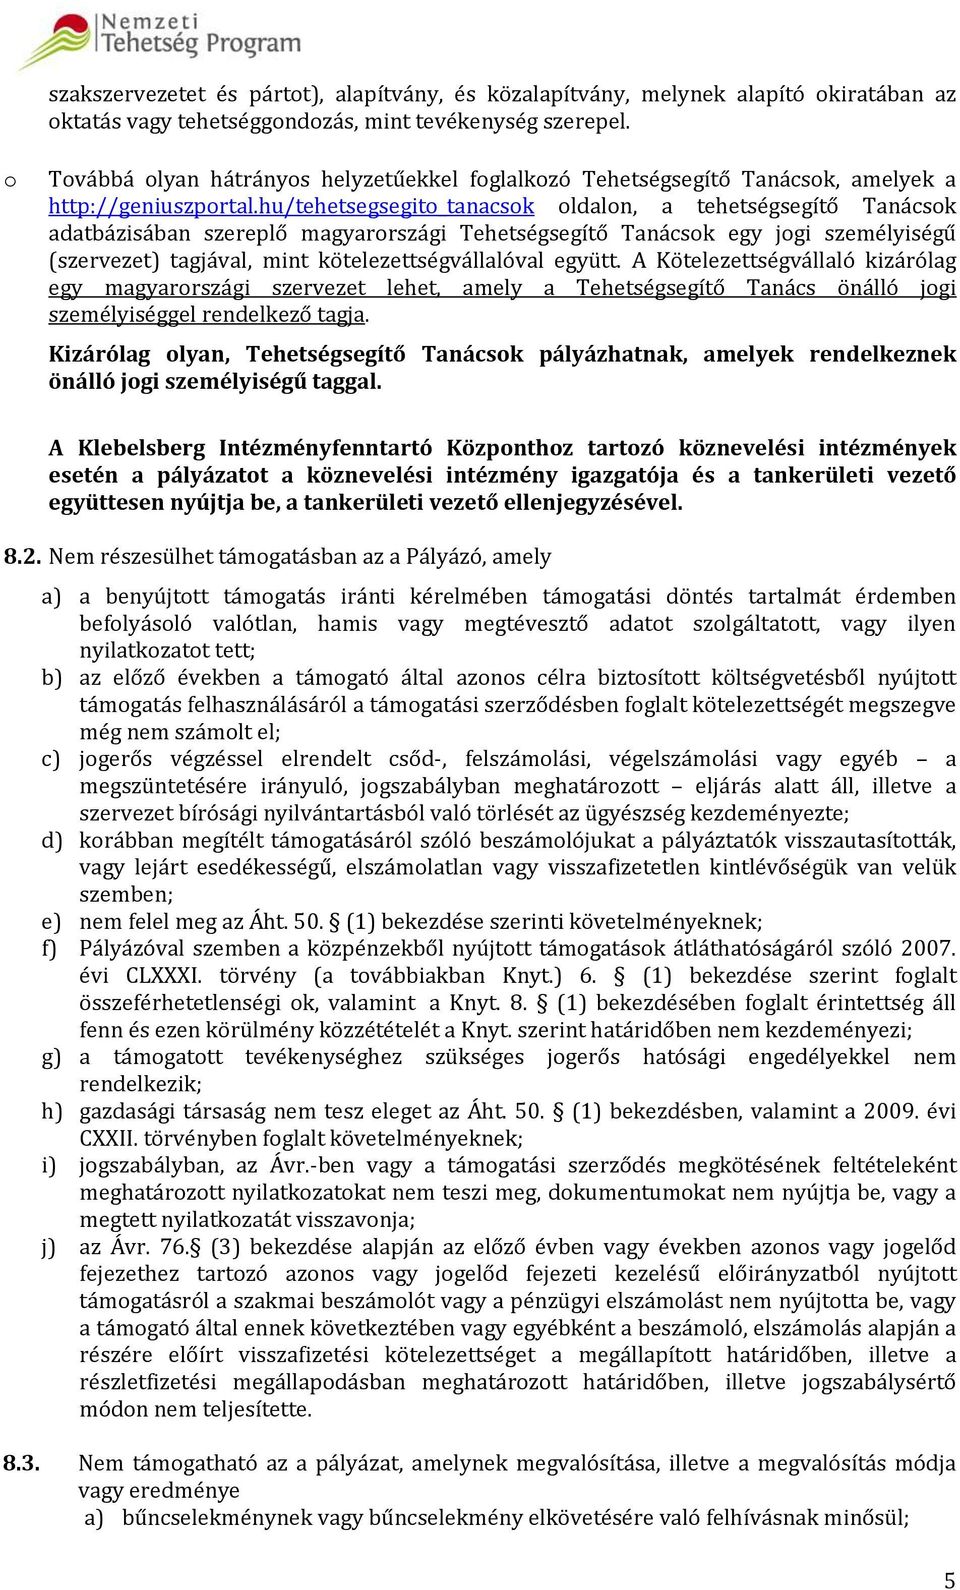 hu/tehetsegsegito_tanacsok oldalon, a tehetségsegítő Tanácsok adatbázisában szereplő magyarországi Tehetségsegítő Tanácsok egy jogi személyiségű (szervezet) tagjával, mint kötelezettségvállalóval